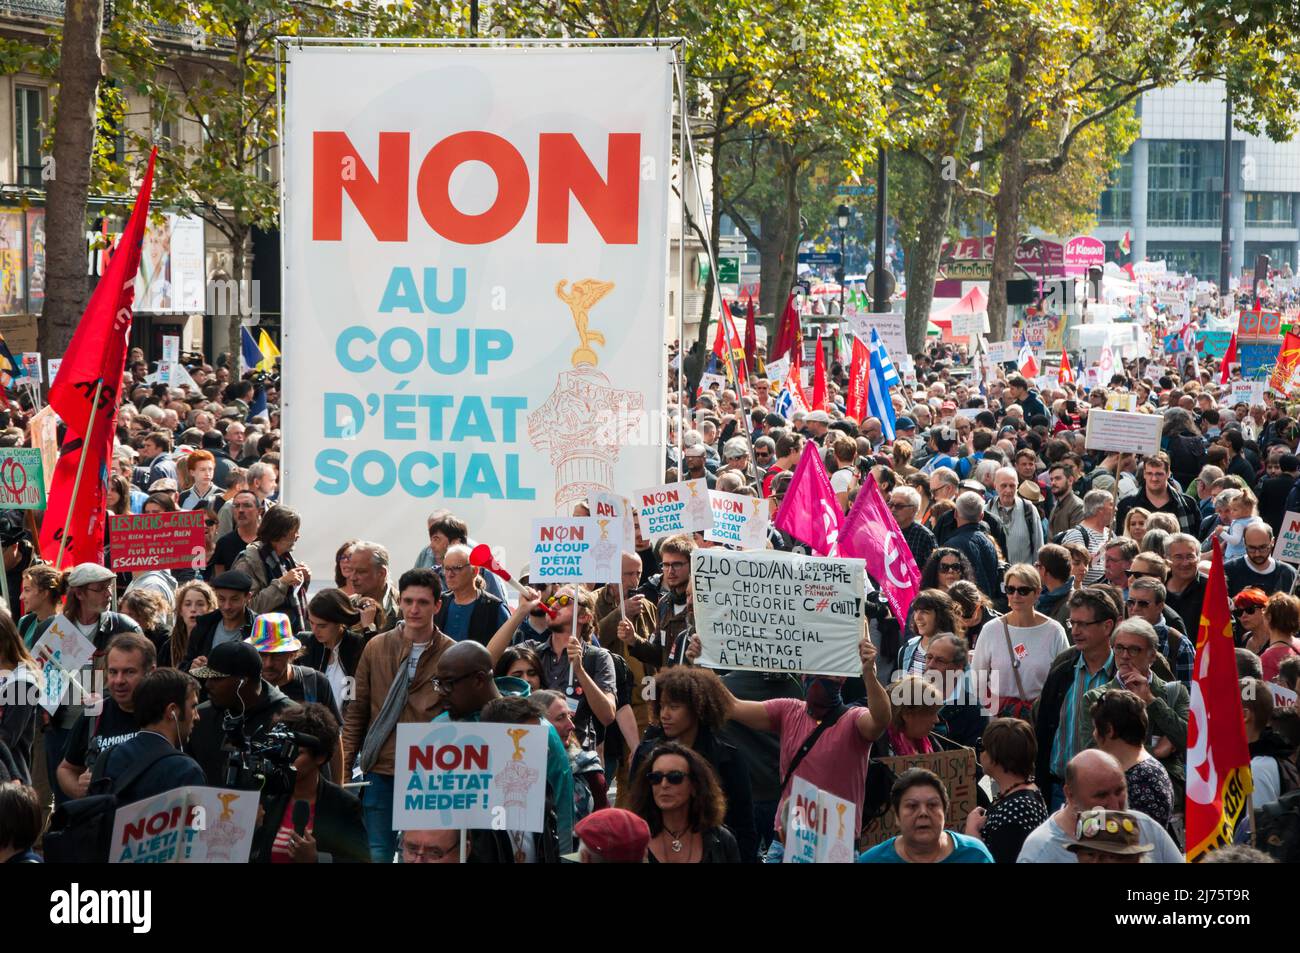 PARÍS, FRANCIA - 23 DE SEPTIEMBRE de 2017 : Demostración organizada por el partido de extrema izquierda 'Les Insoumis' contra las leyes laborales apoyadas por el presidente Macron Foto de stock